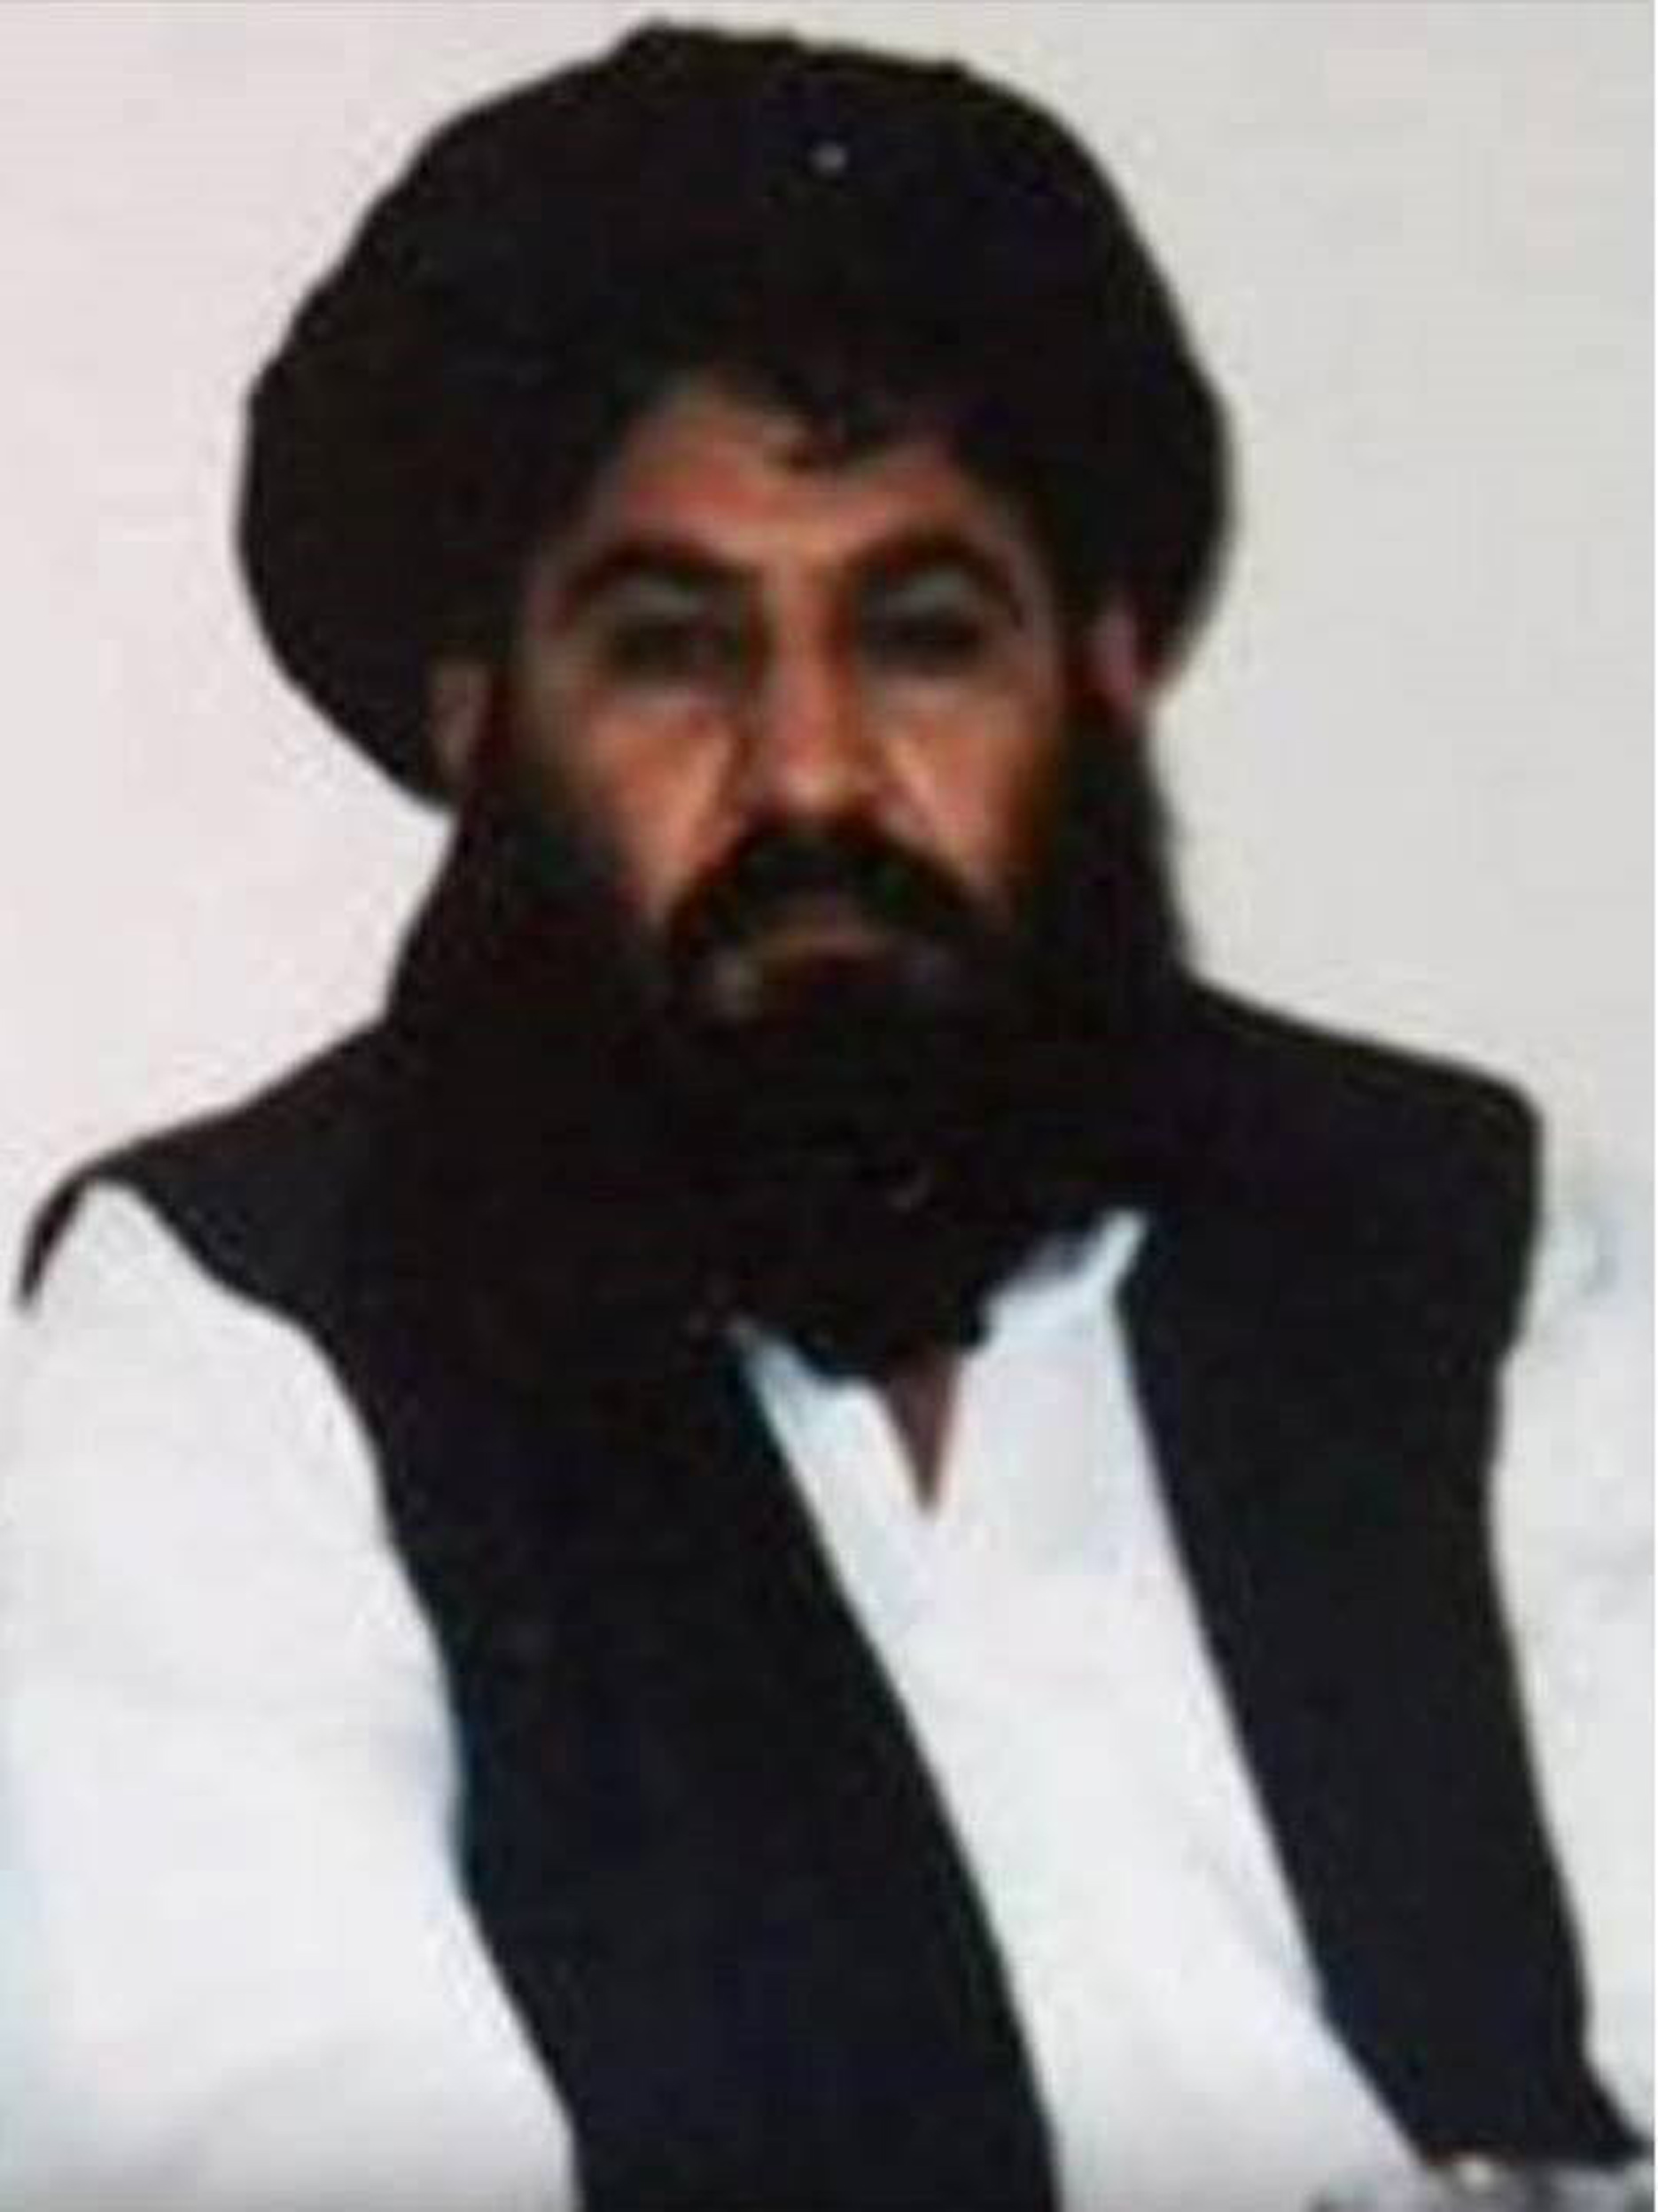 塔利班領袖被證實死於空襲